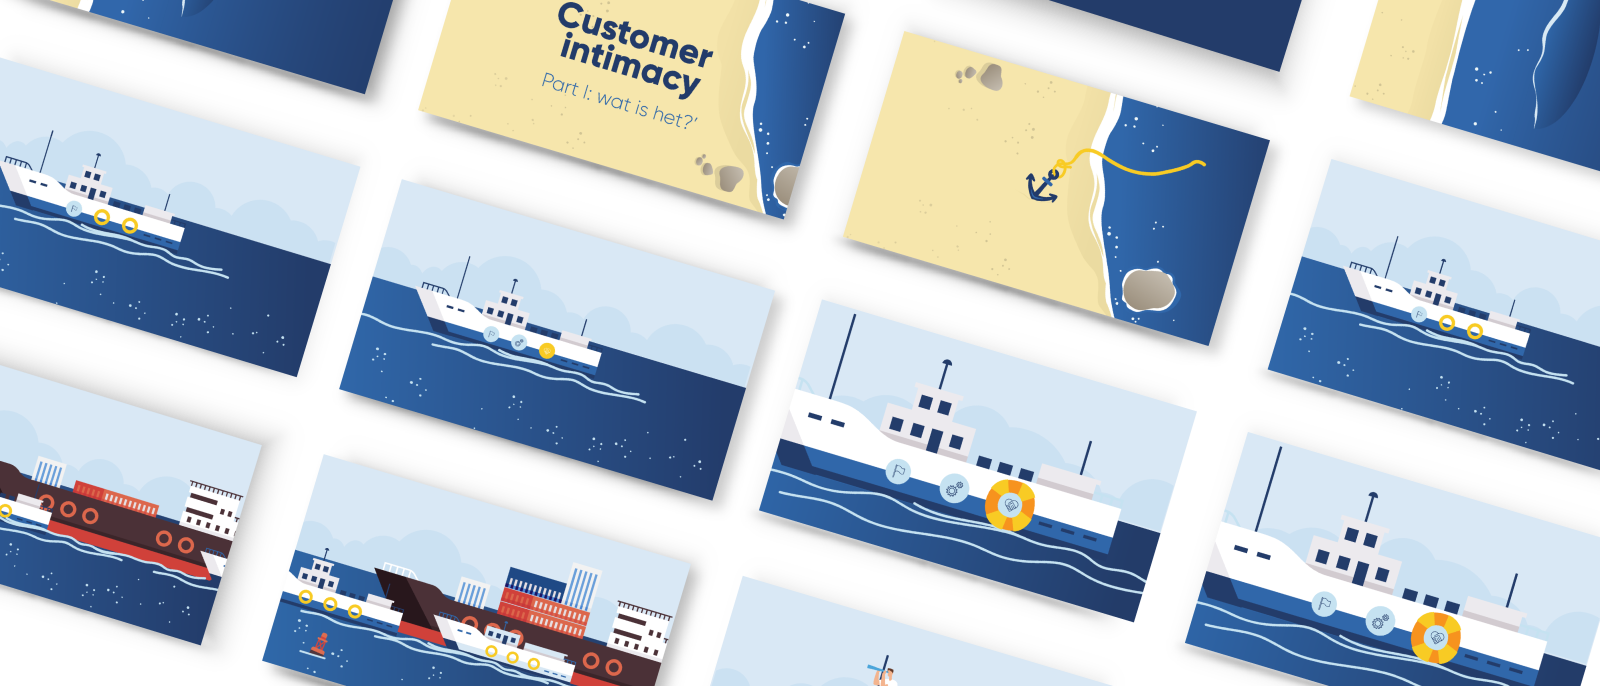 North Sea Port hijst com&co aan boord om klantenaanpak te verankeren